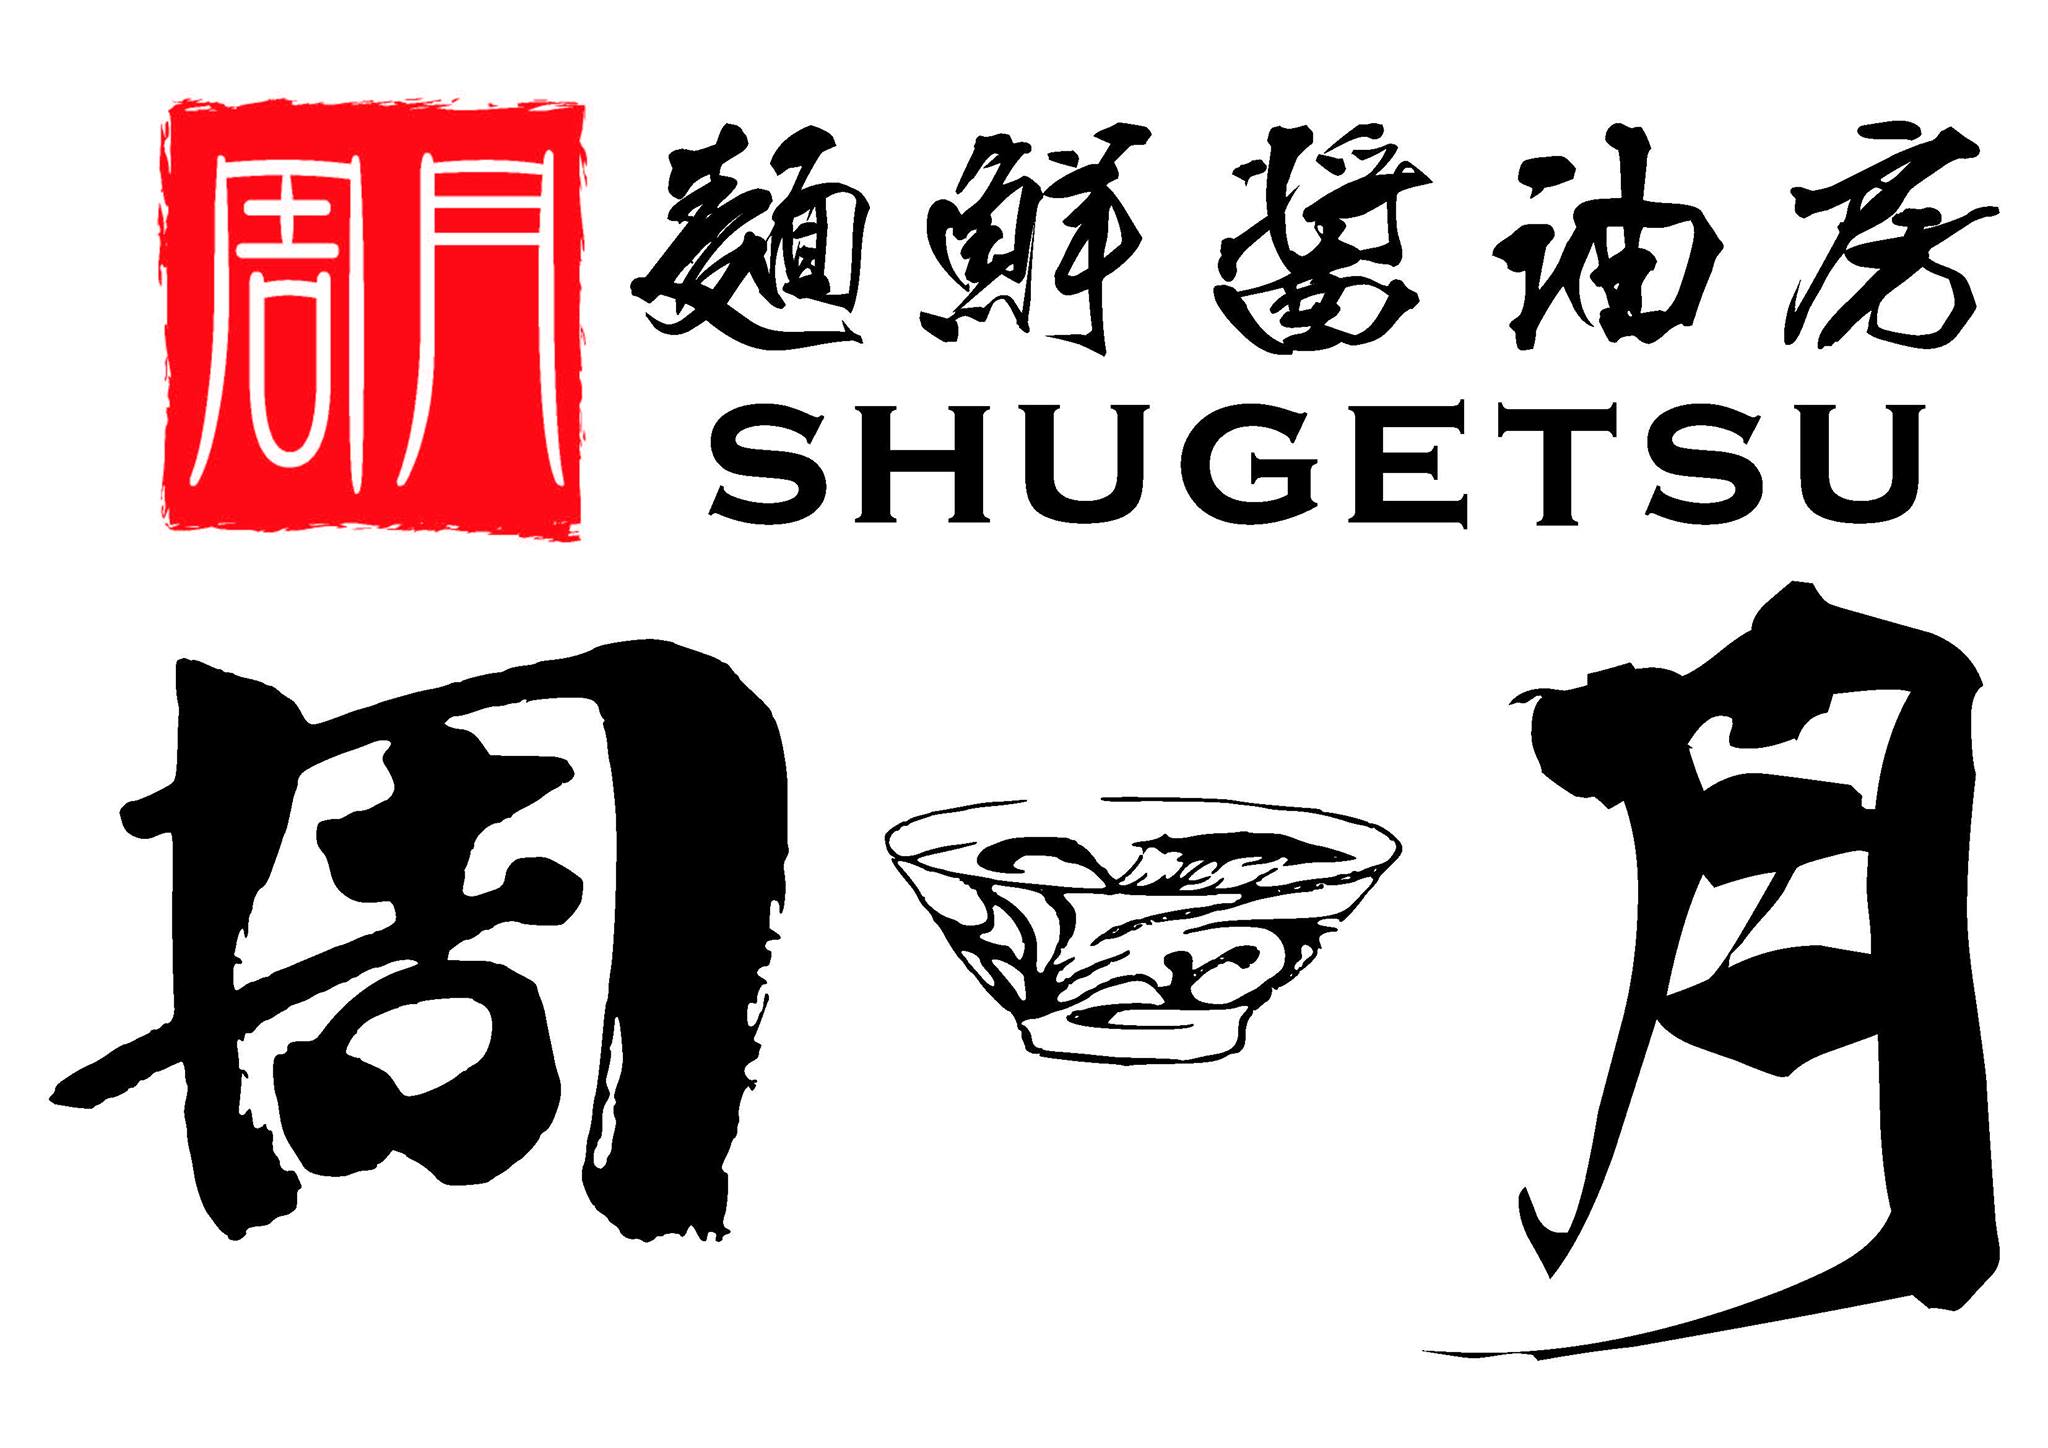 Shugetsu